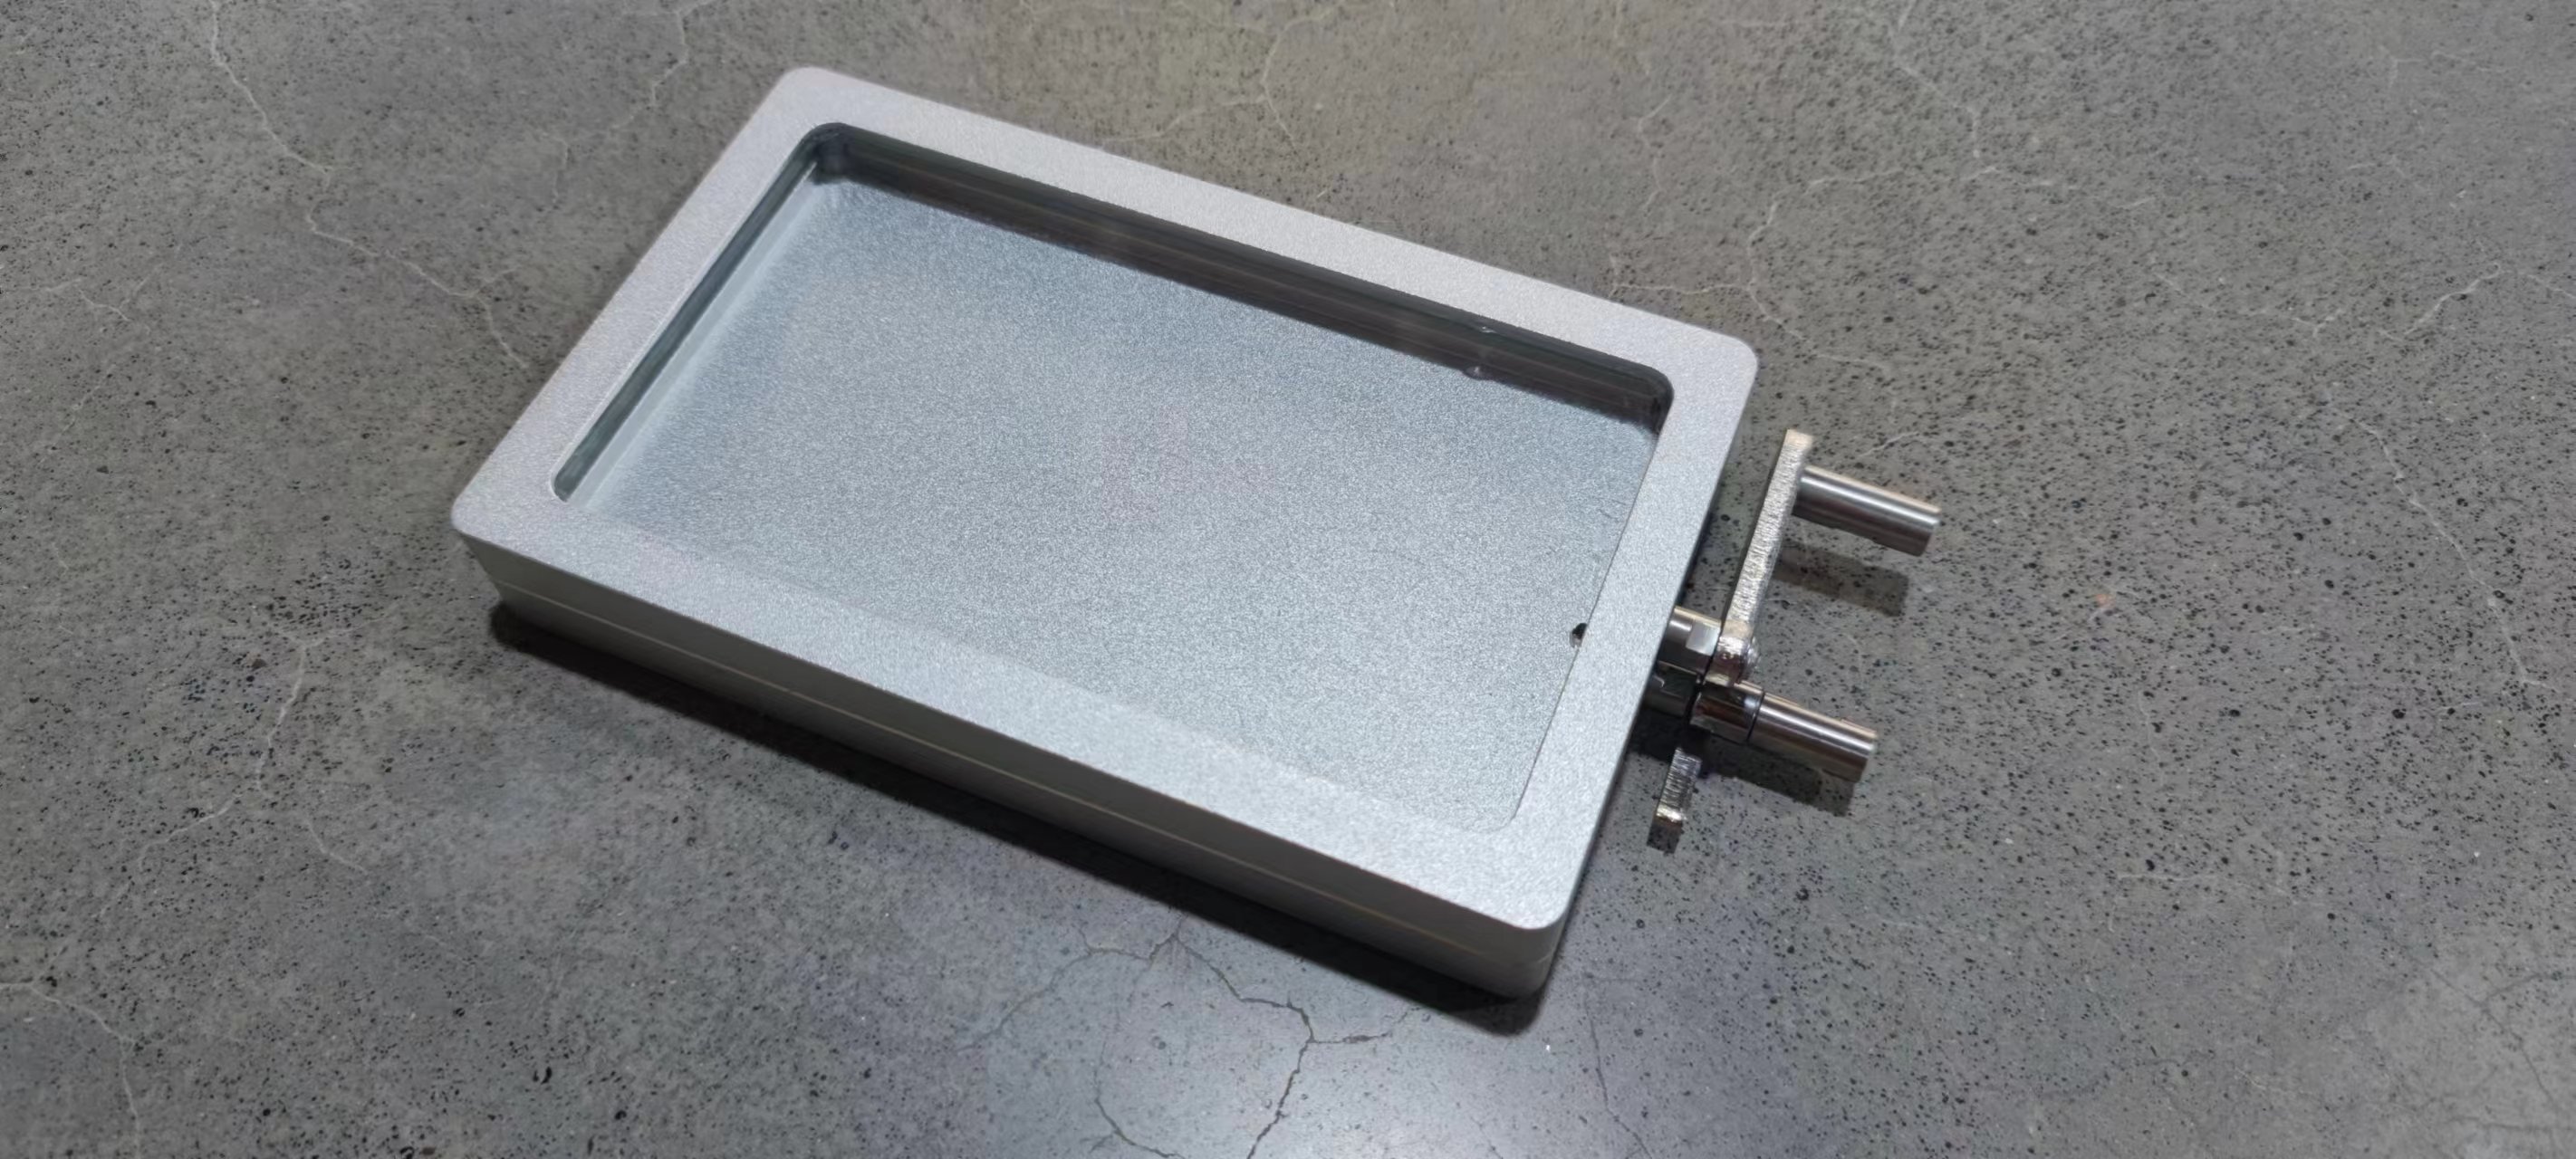 光敏机夹具光敏印章机曝光盒光学玻璃抽屉金属把手光敏刻章机配件 - 图3